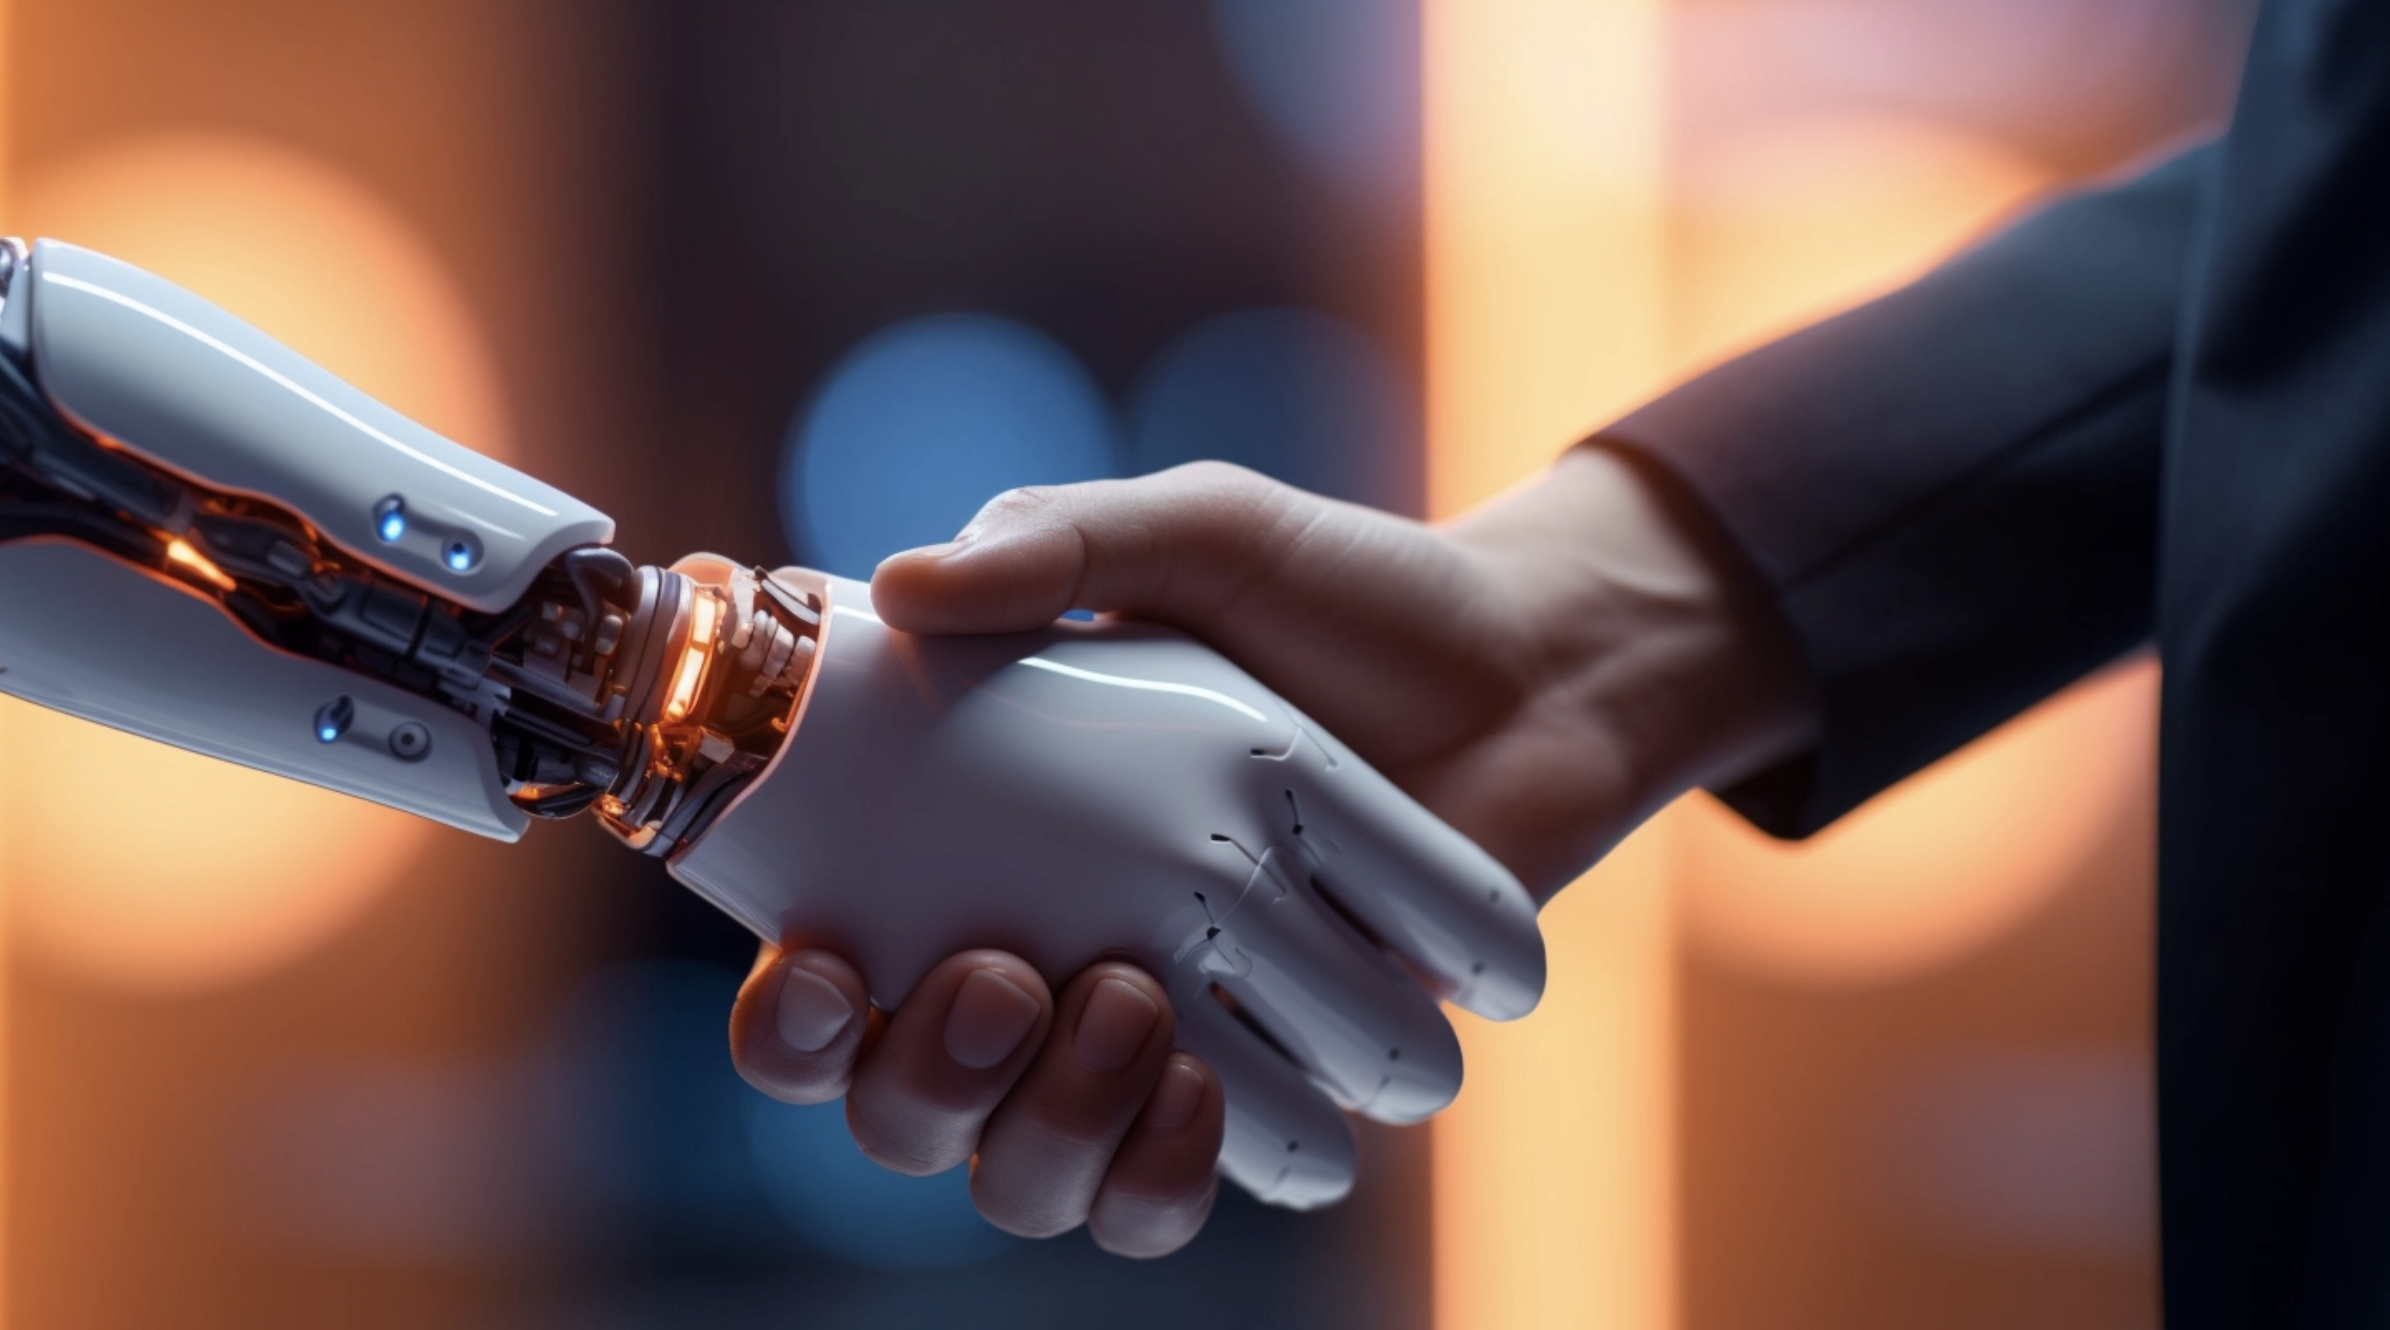 Robot shaking hands